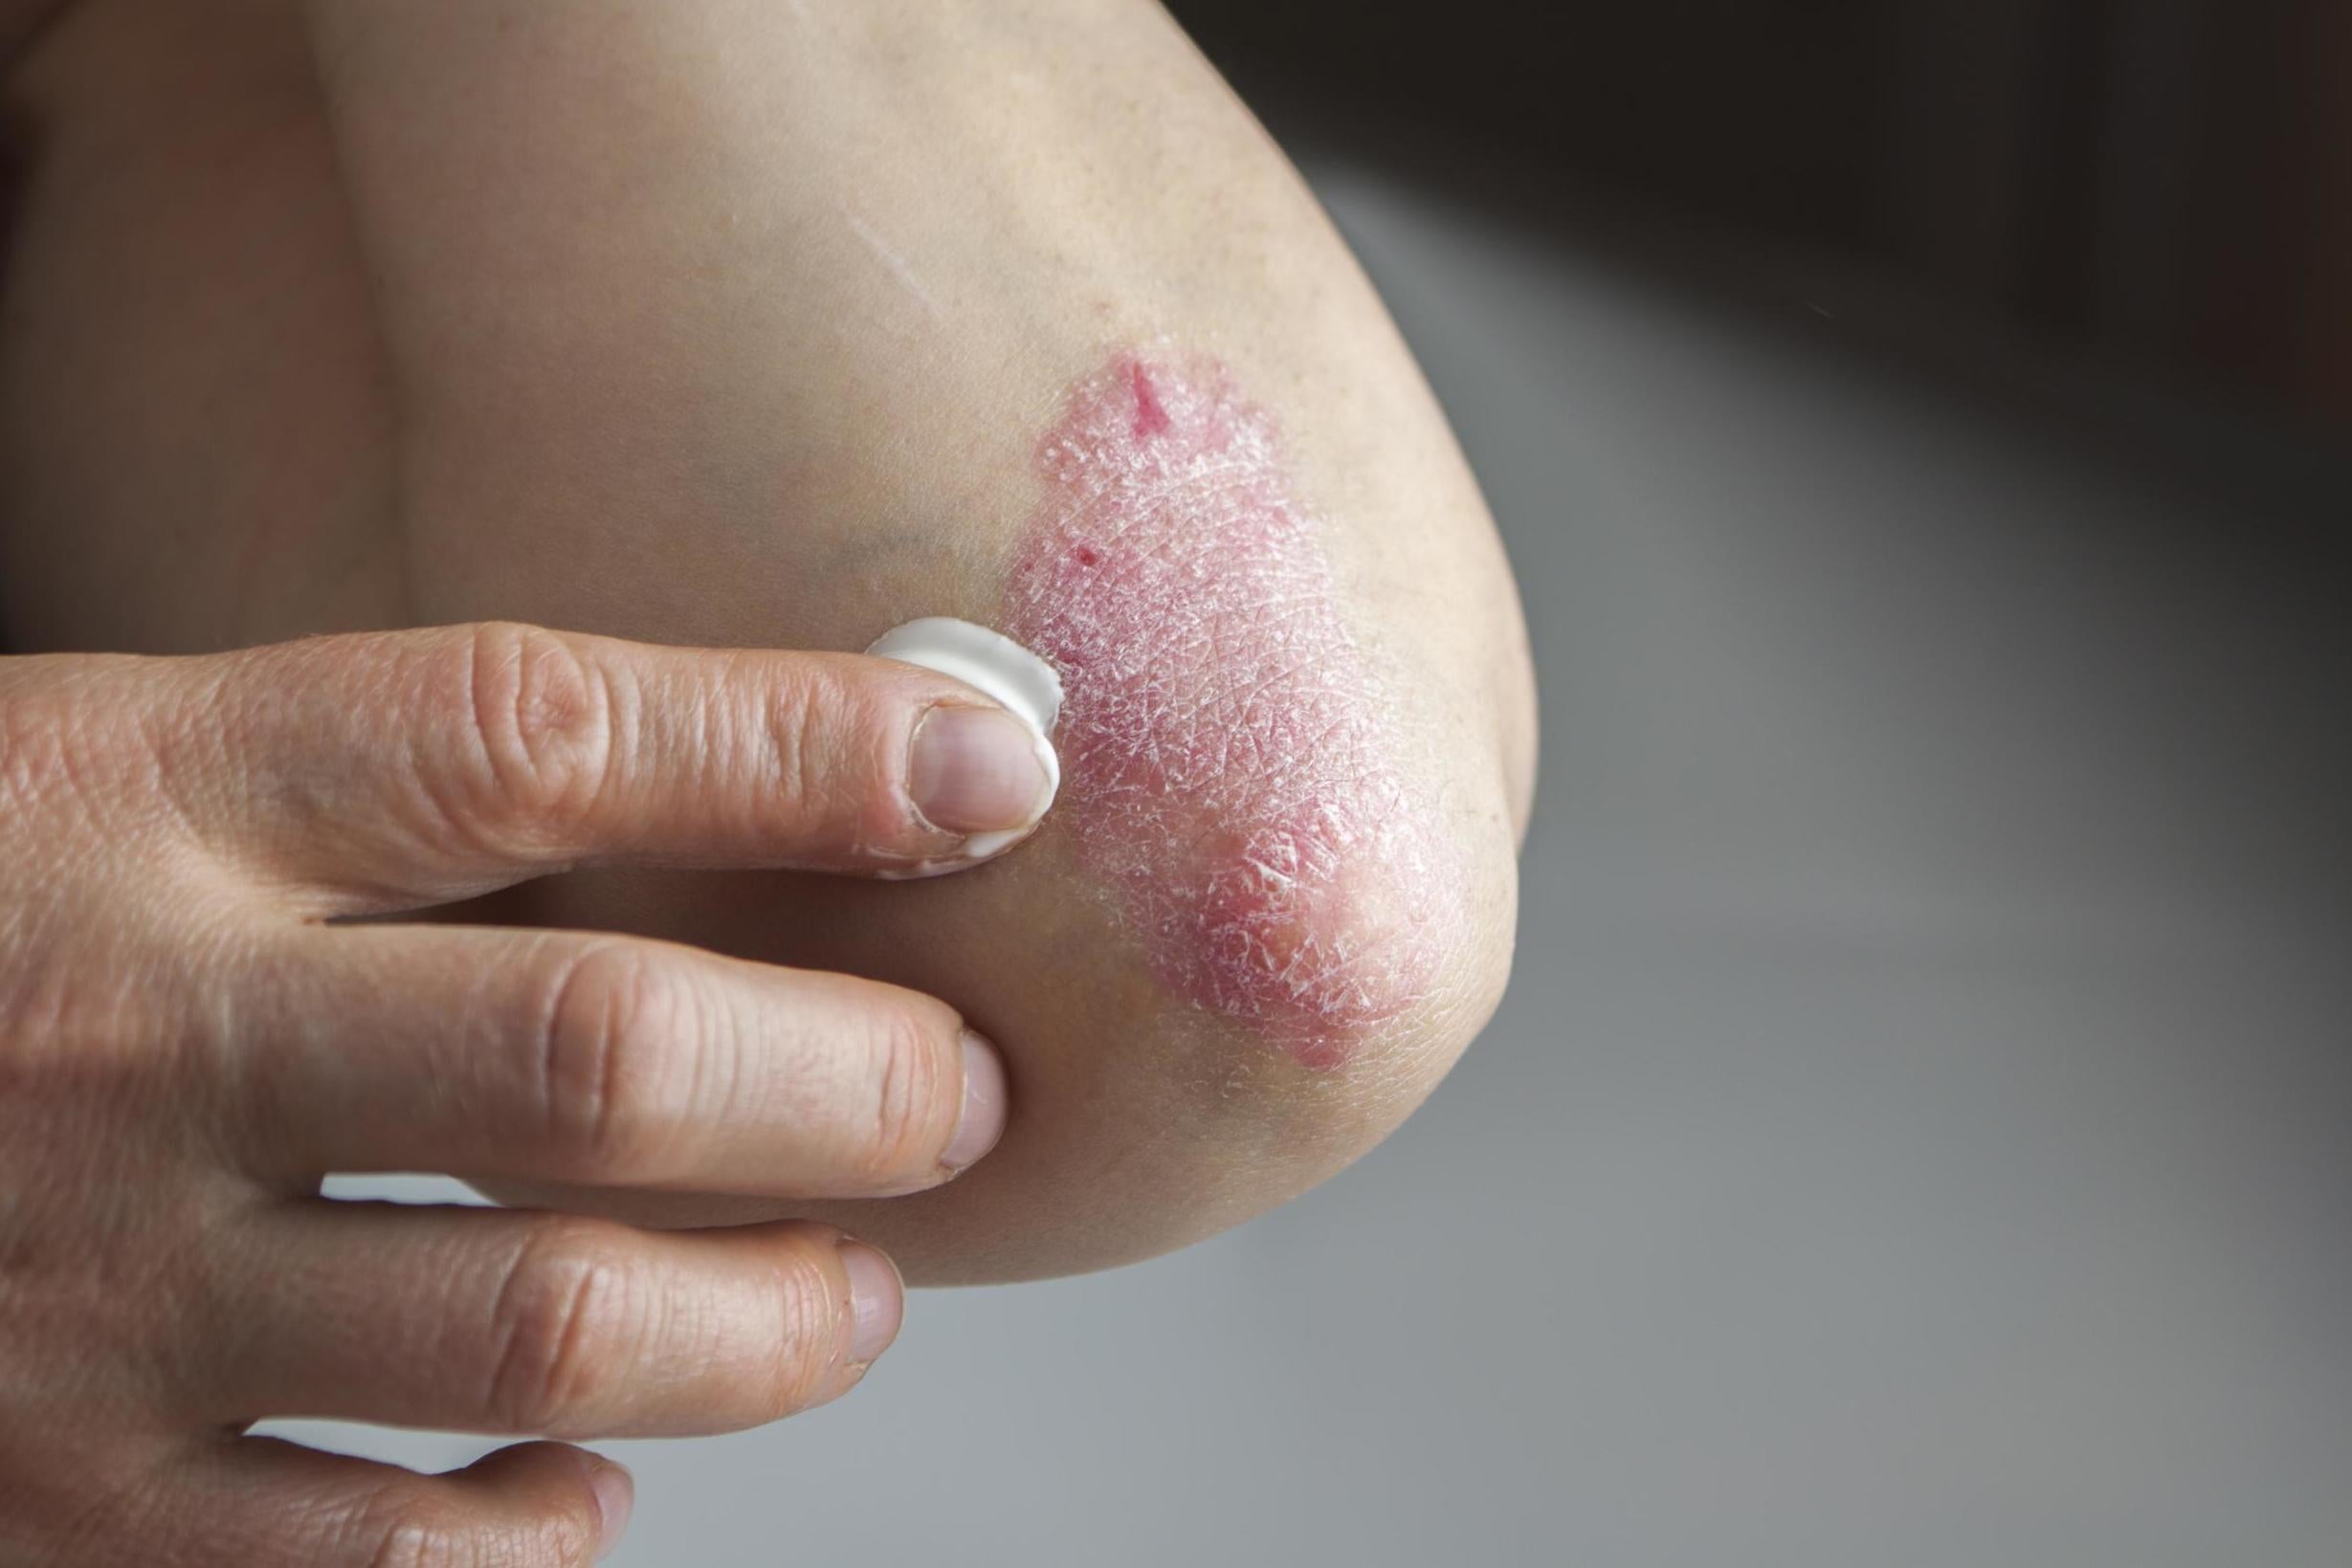 how do you cure eczema